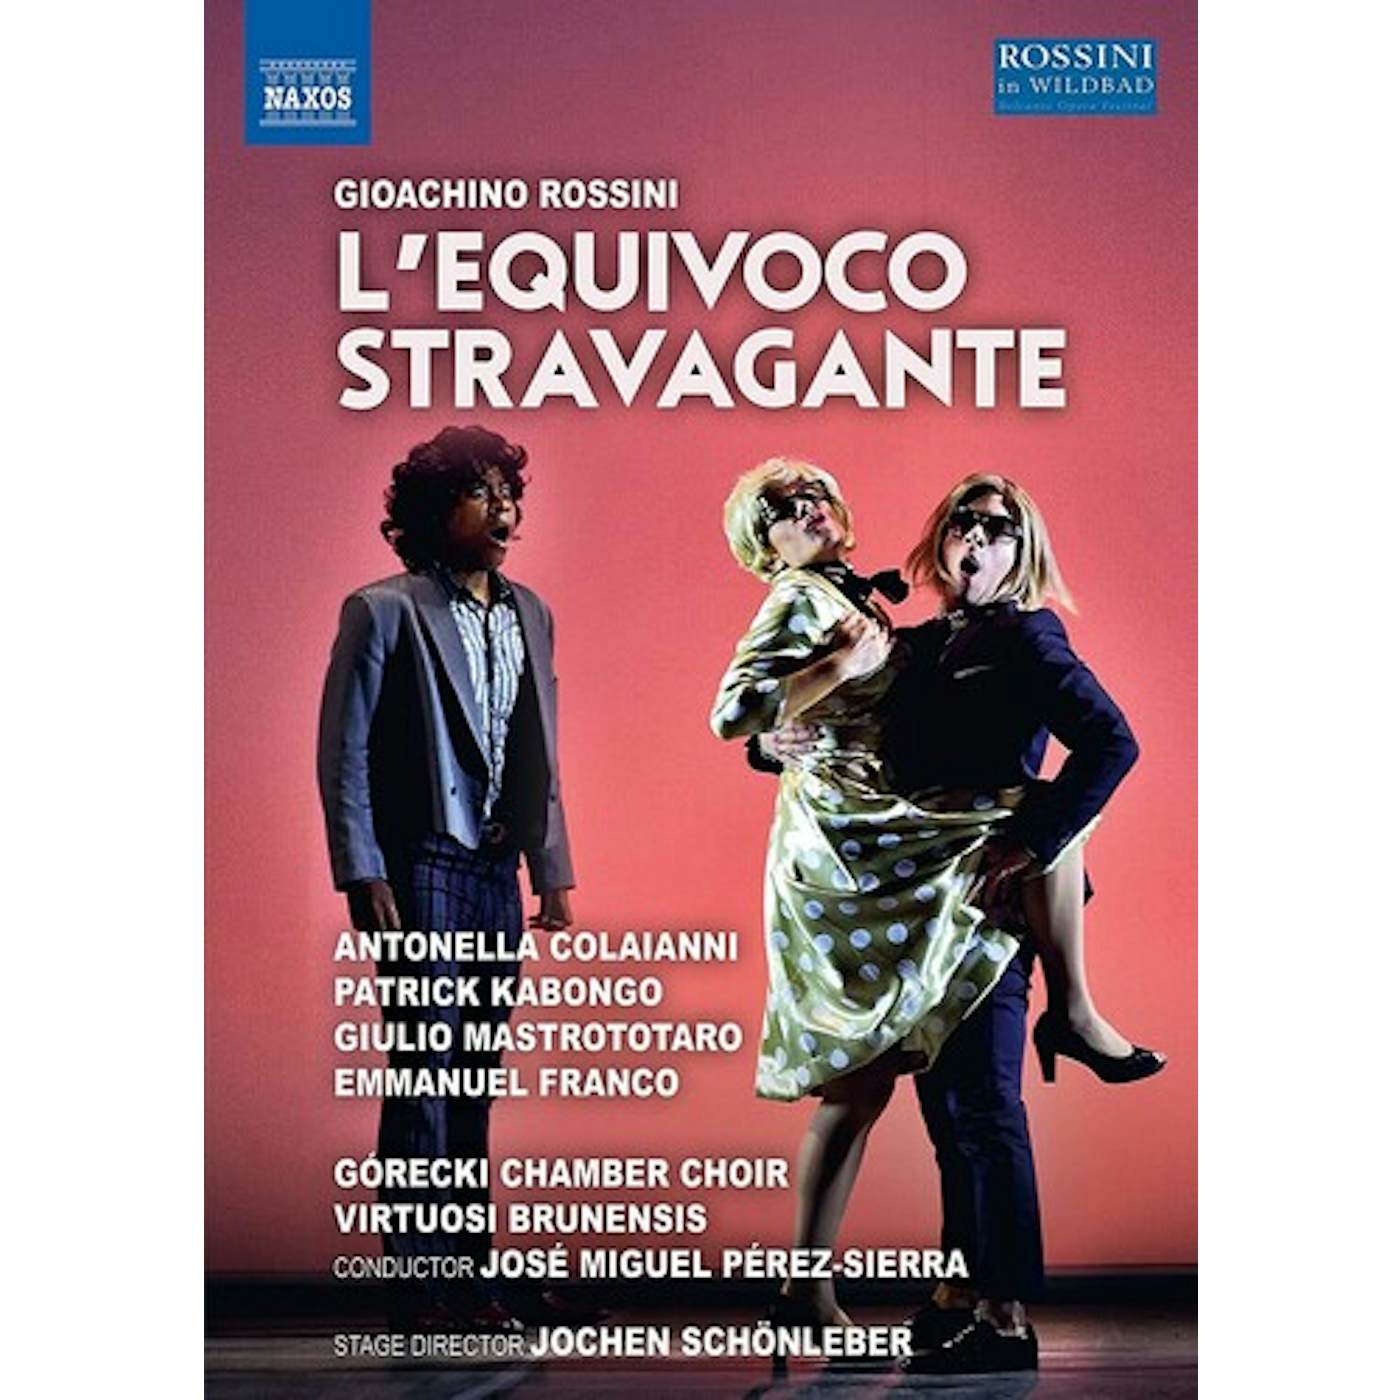 Rossini L'EQUIVOCO STRAVAGANTE DVD